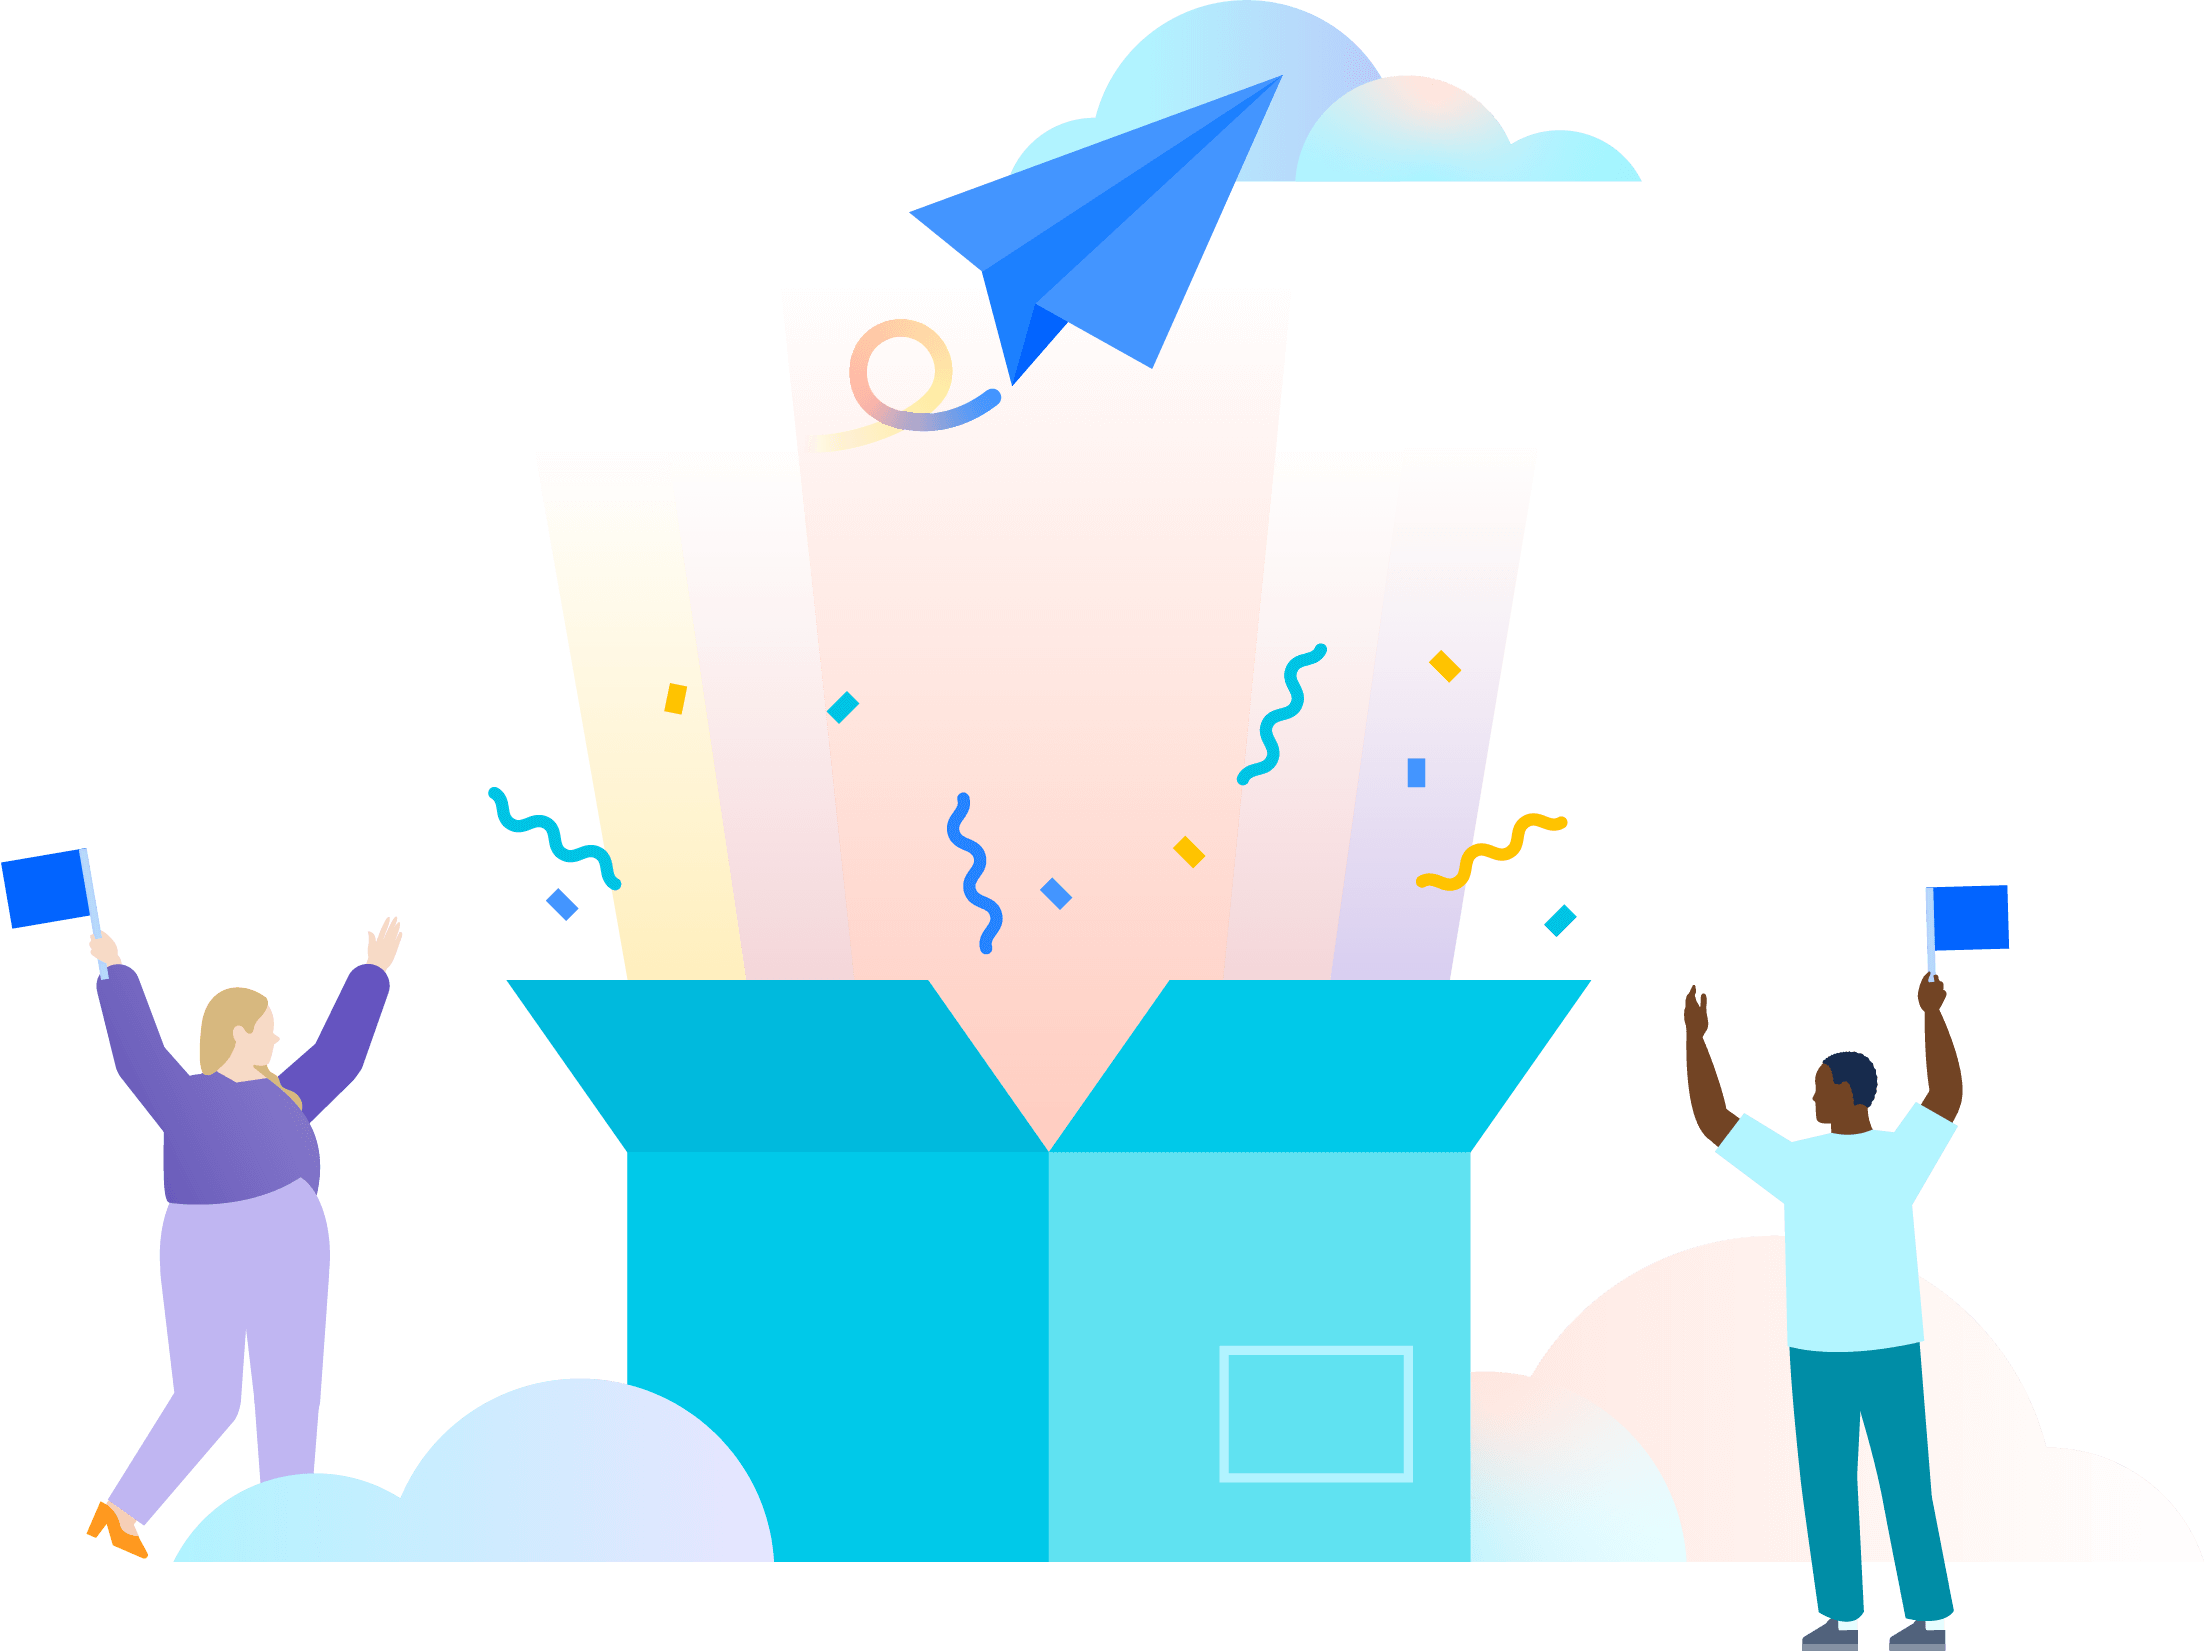 Ilustración de dos personas celebrando la apertura de una caja grande de color verde azulado sobredimensionada de la que salen rayos de luz multicolores, confeti y un avión de papel azul que se dirige hacia las nubes.